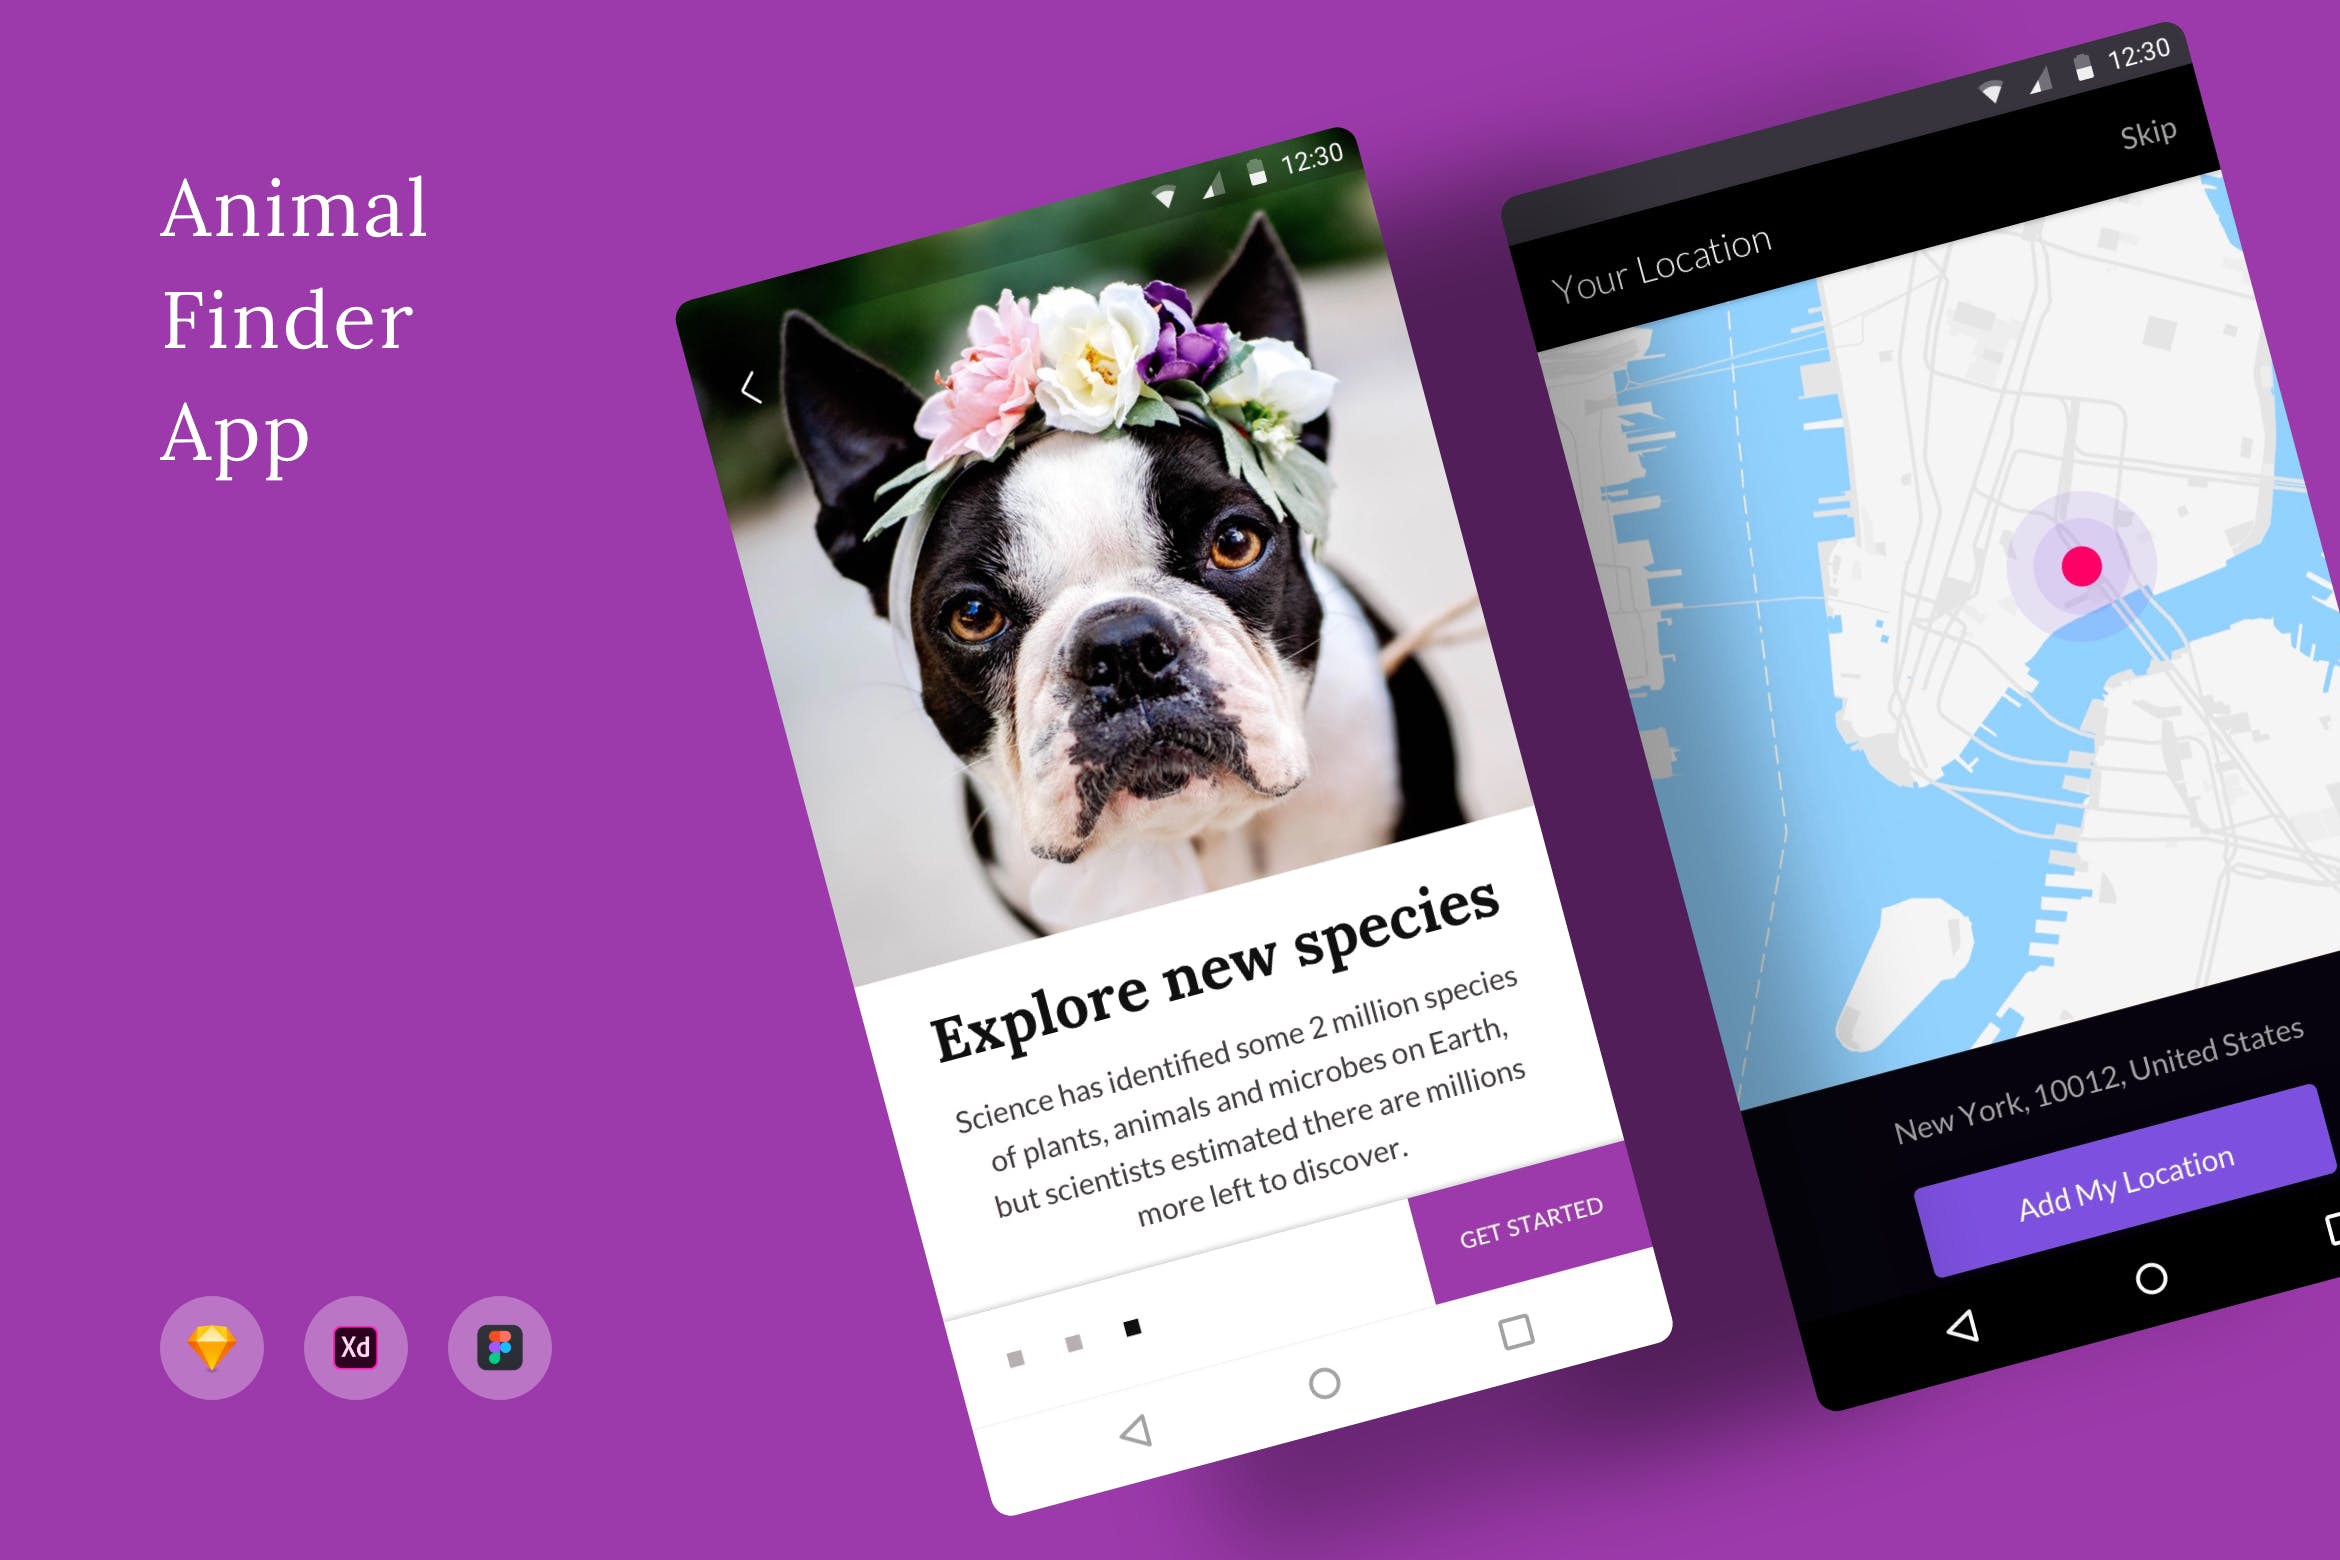 动物防丢失位置搜索APP应用UI界面设计第一素材精选模板 Animal Finder App插图